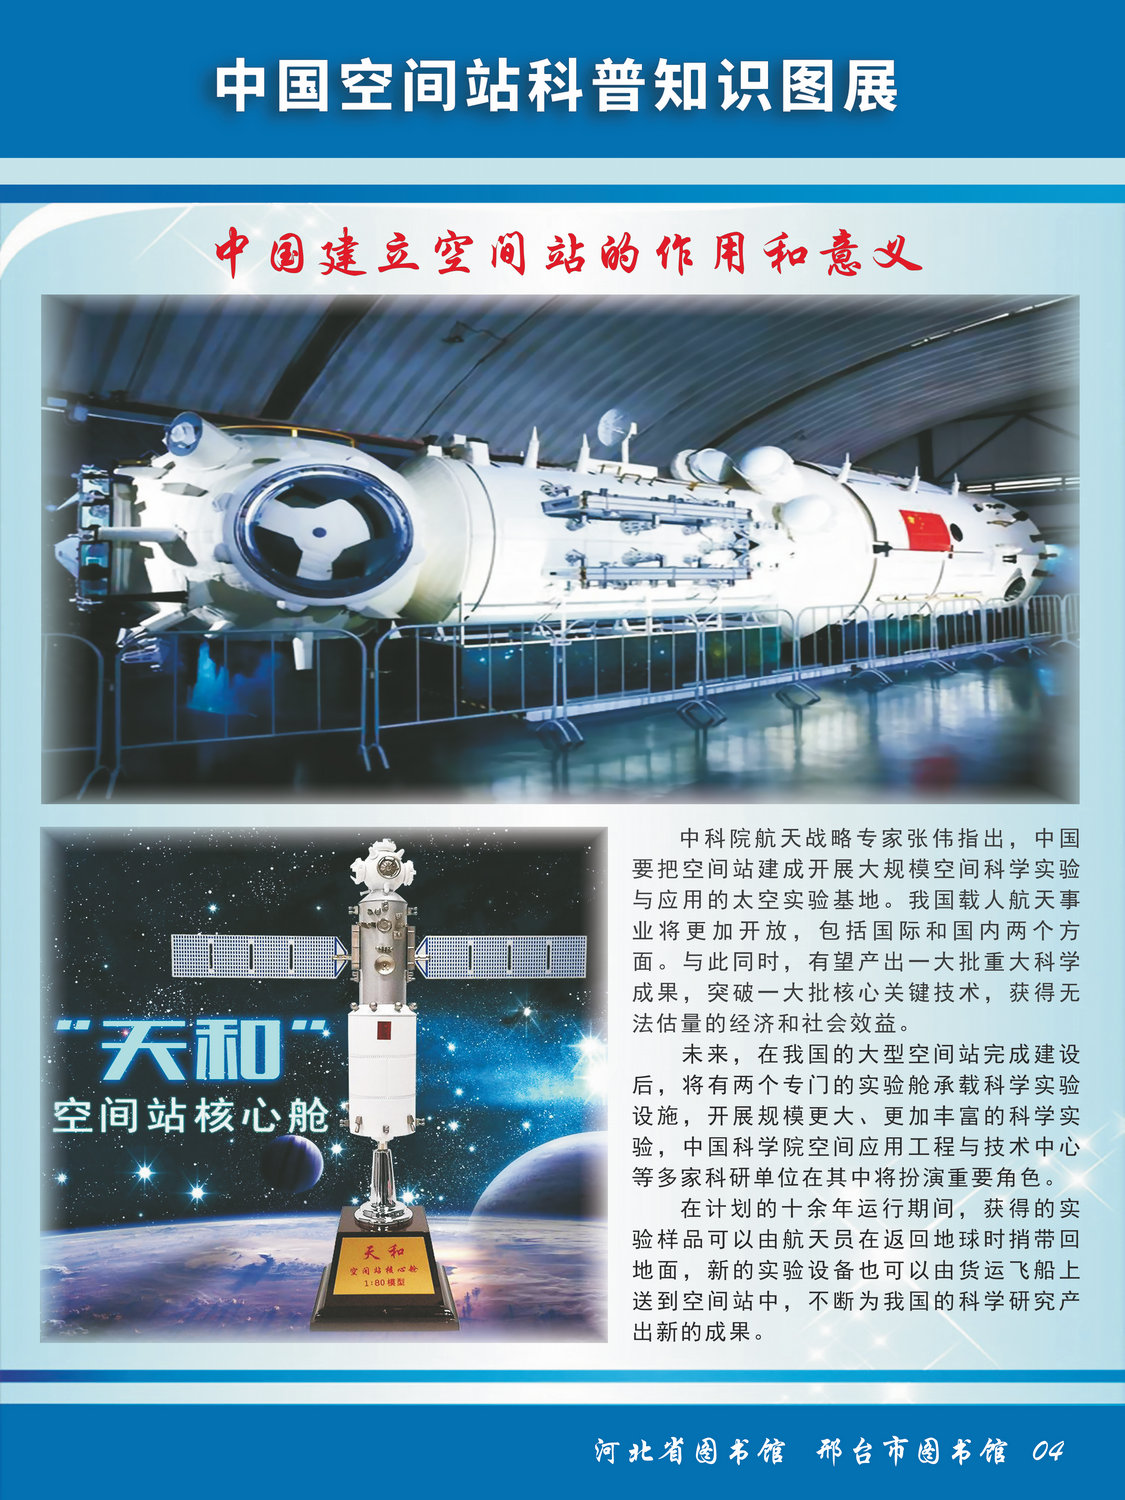 中国空间站科普知识图文展_图4